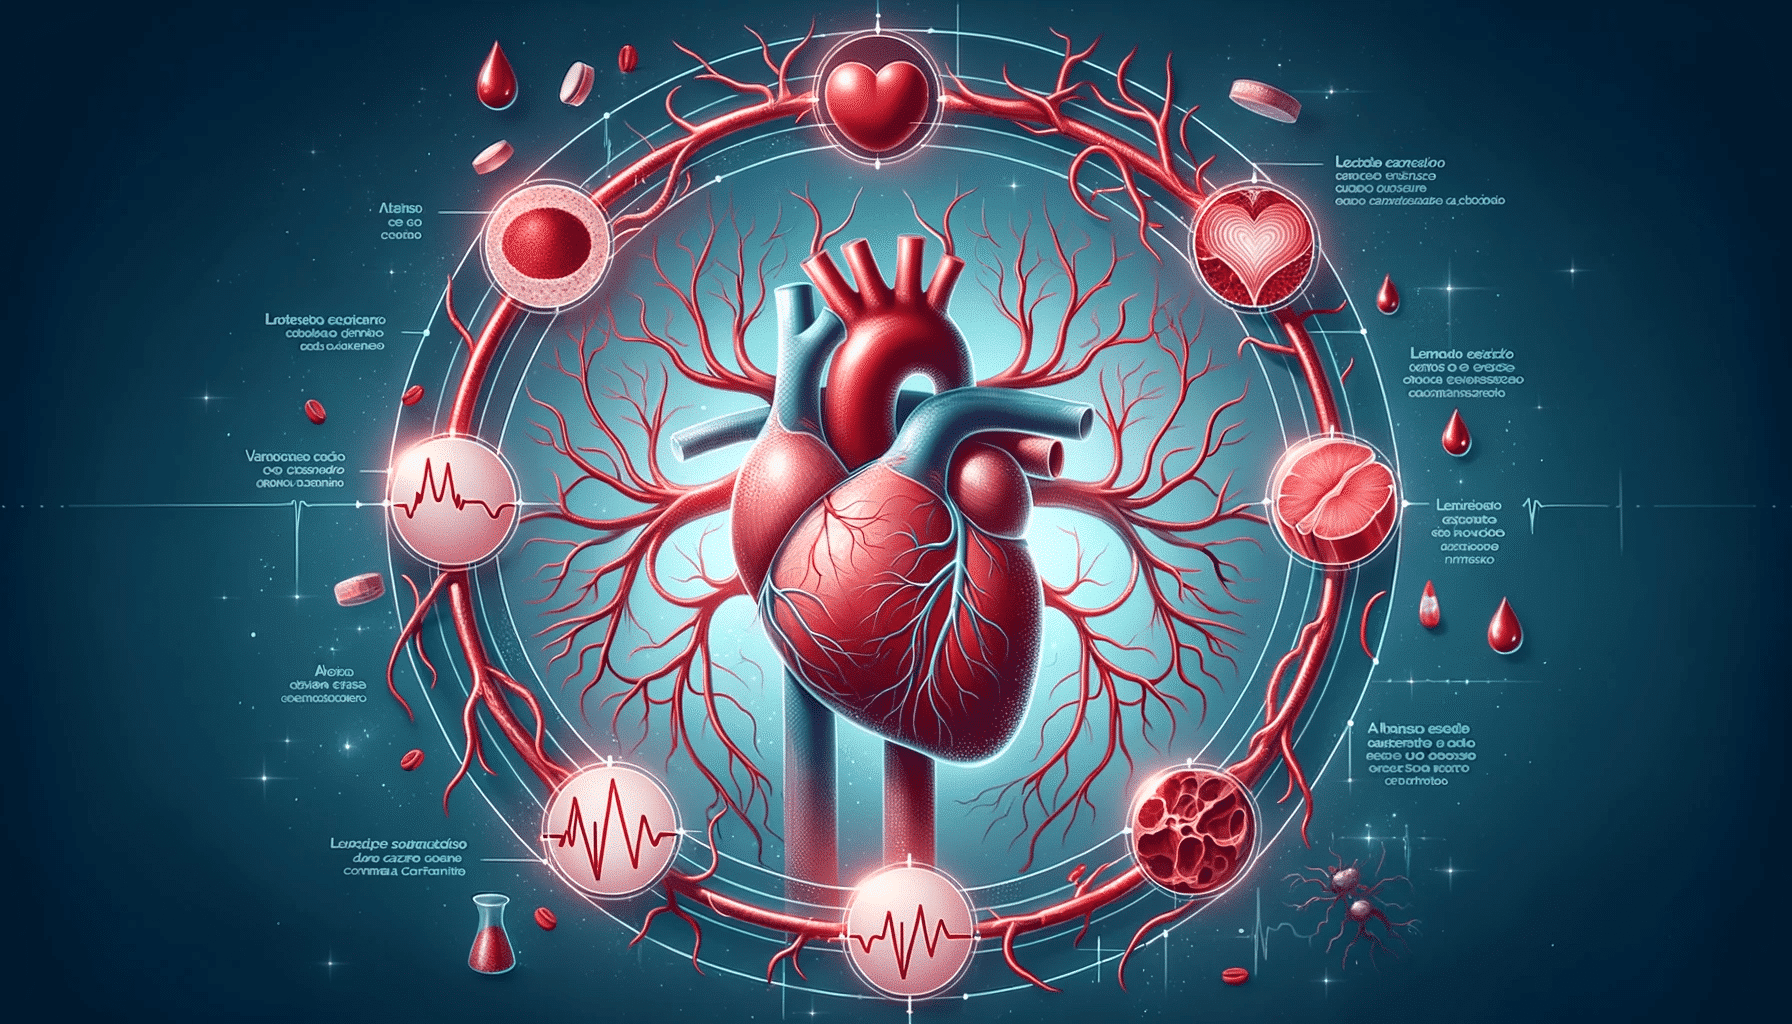 Desenho do sistema cardiovascular com foco no coração e nos vasos sanguíneos. Setas indicam o fluxo do sangue, e manchas escuras representam o acúmulo.